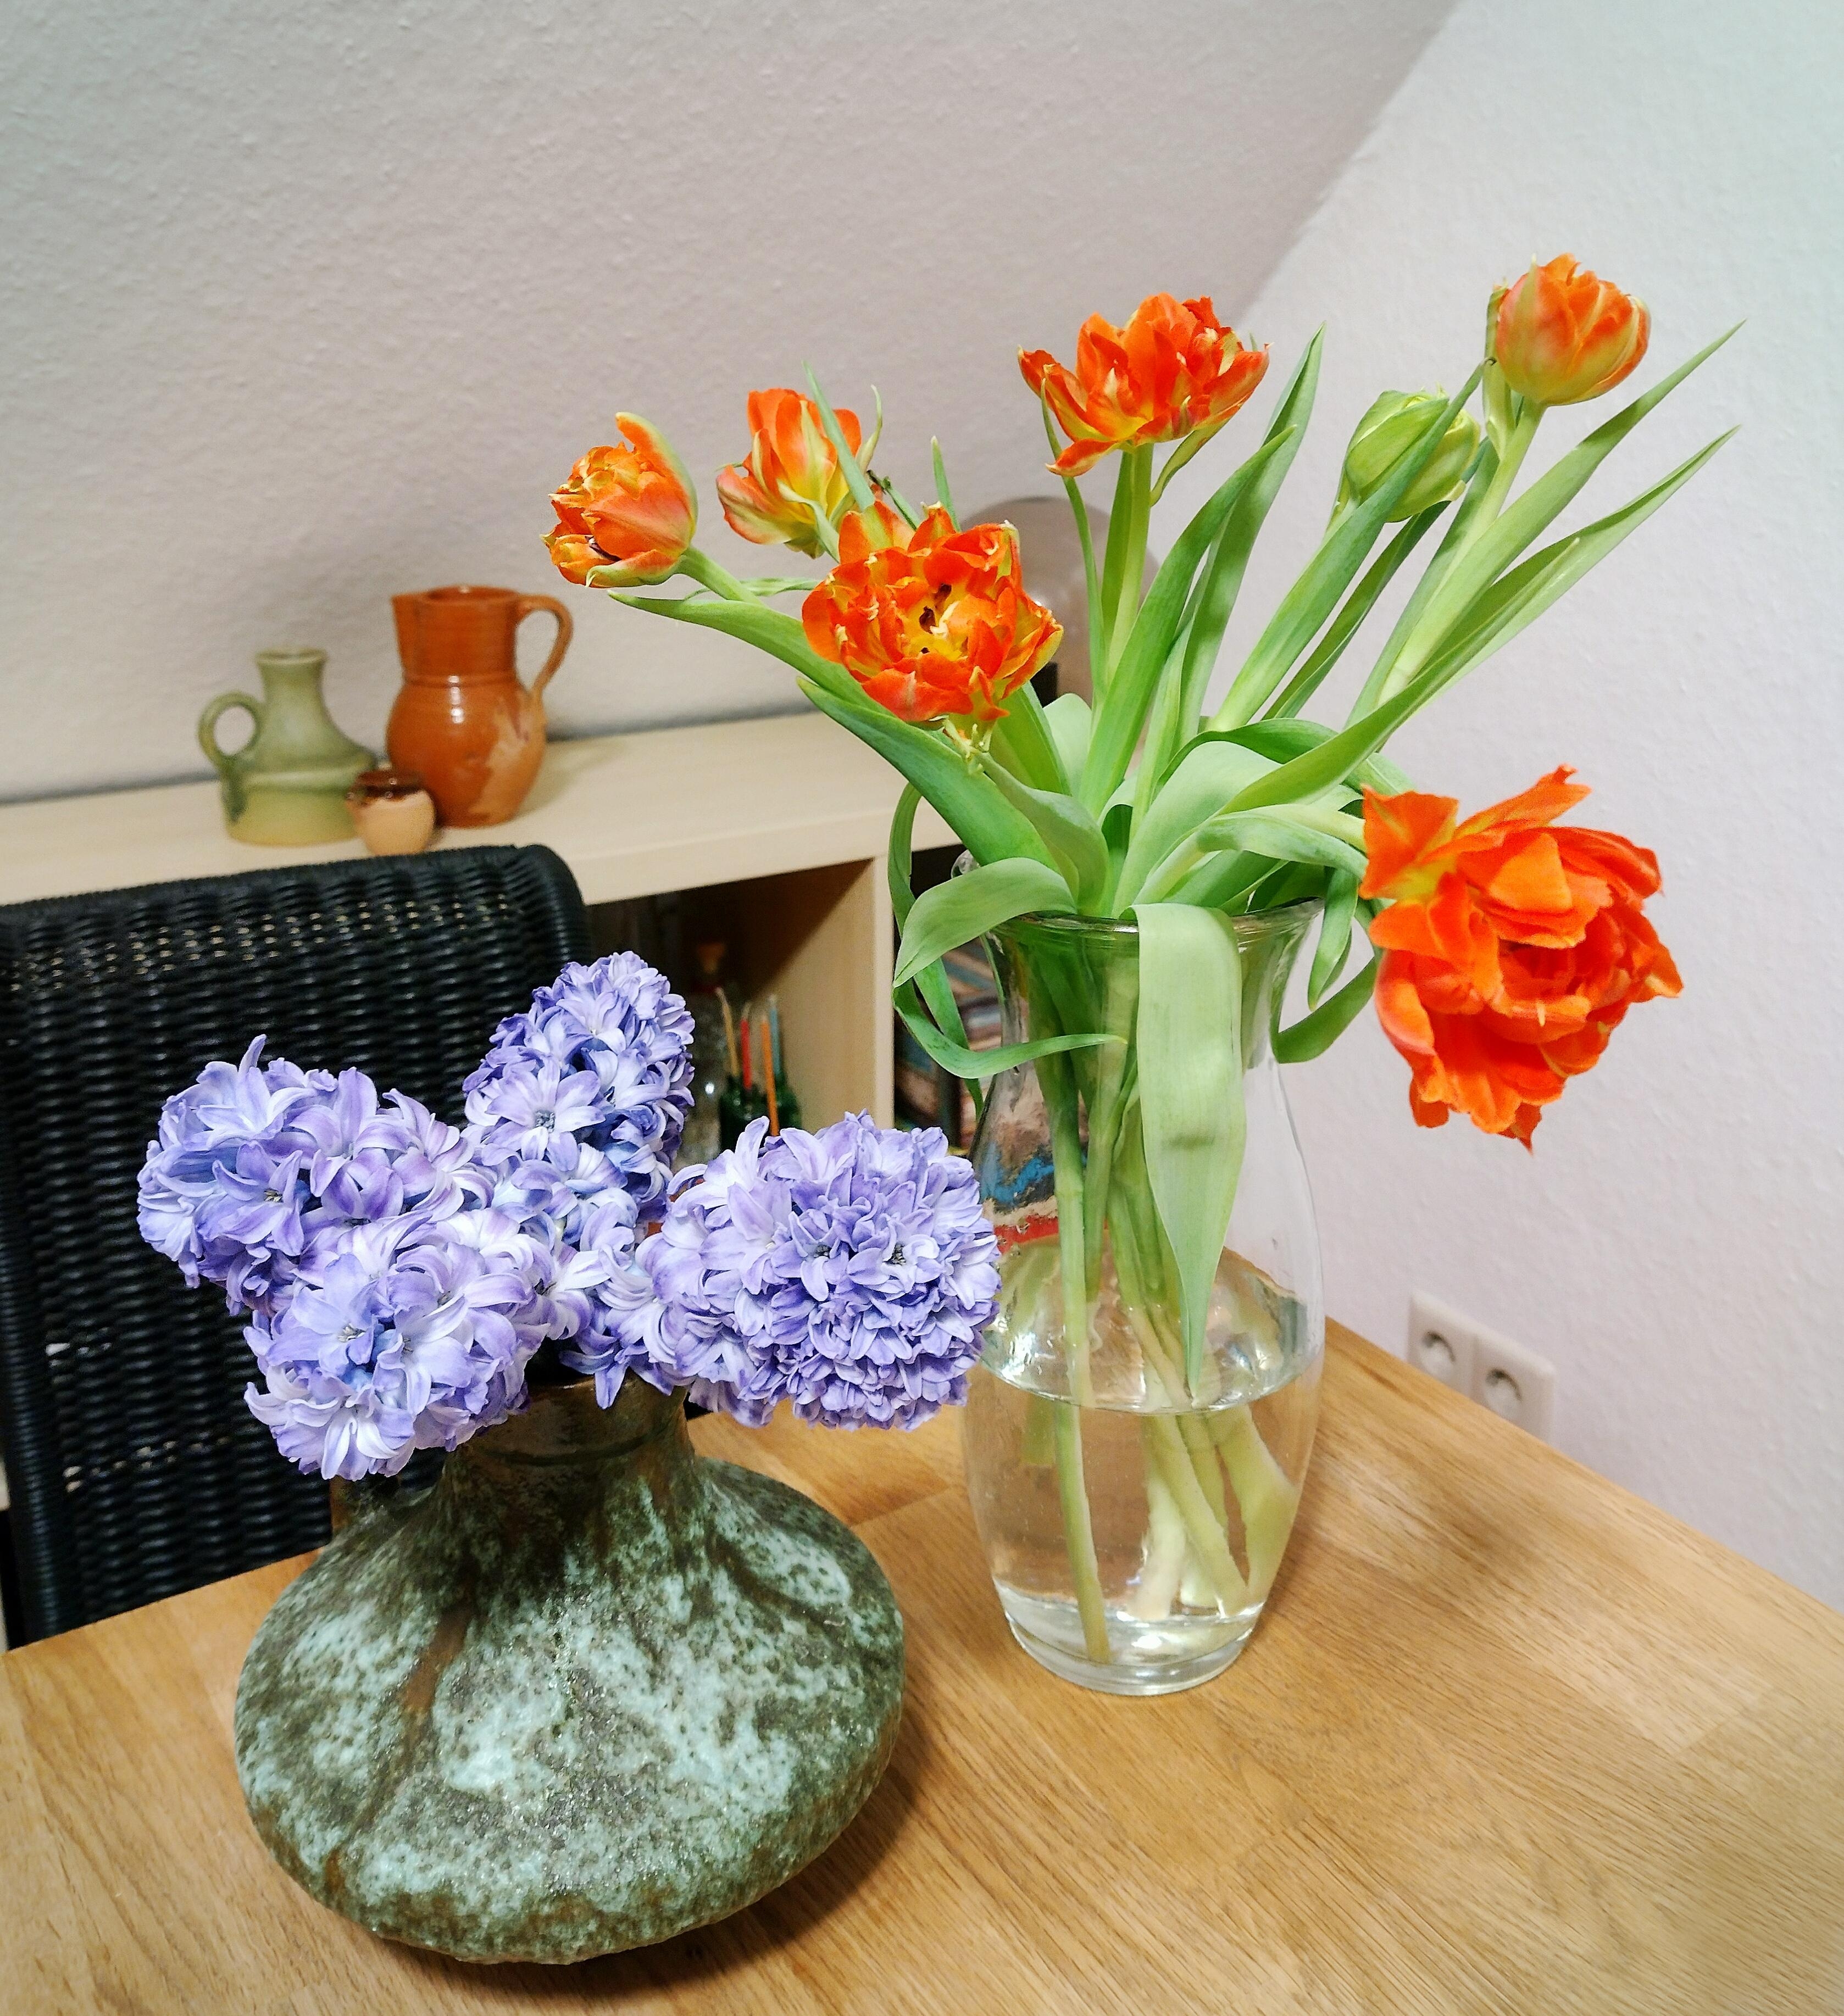 #tulpen #hyazinthen #vase #blumenliebe #frischeblumen